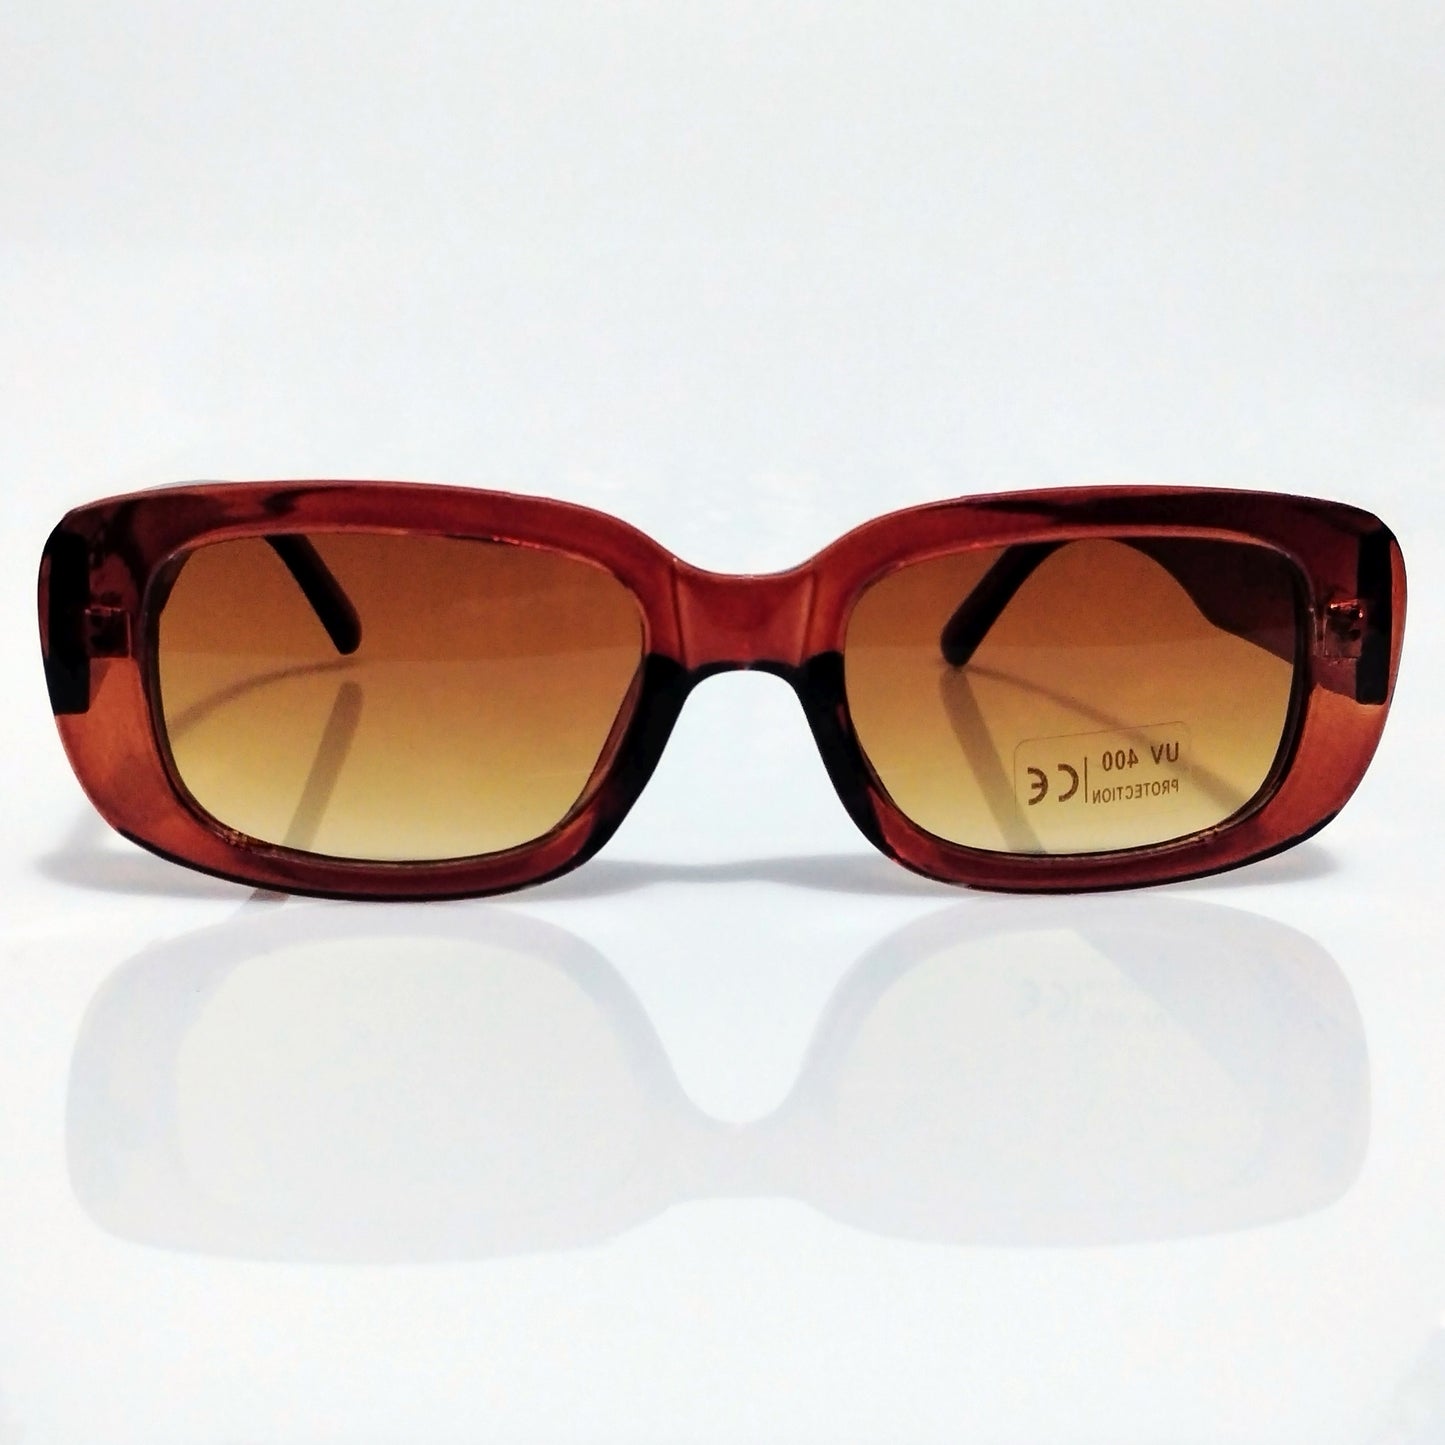 Glamourange Sunglasses Model GR-1005 C5